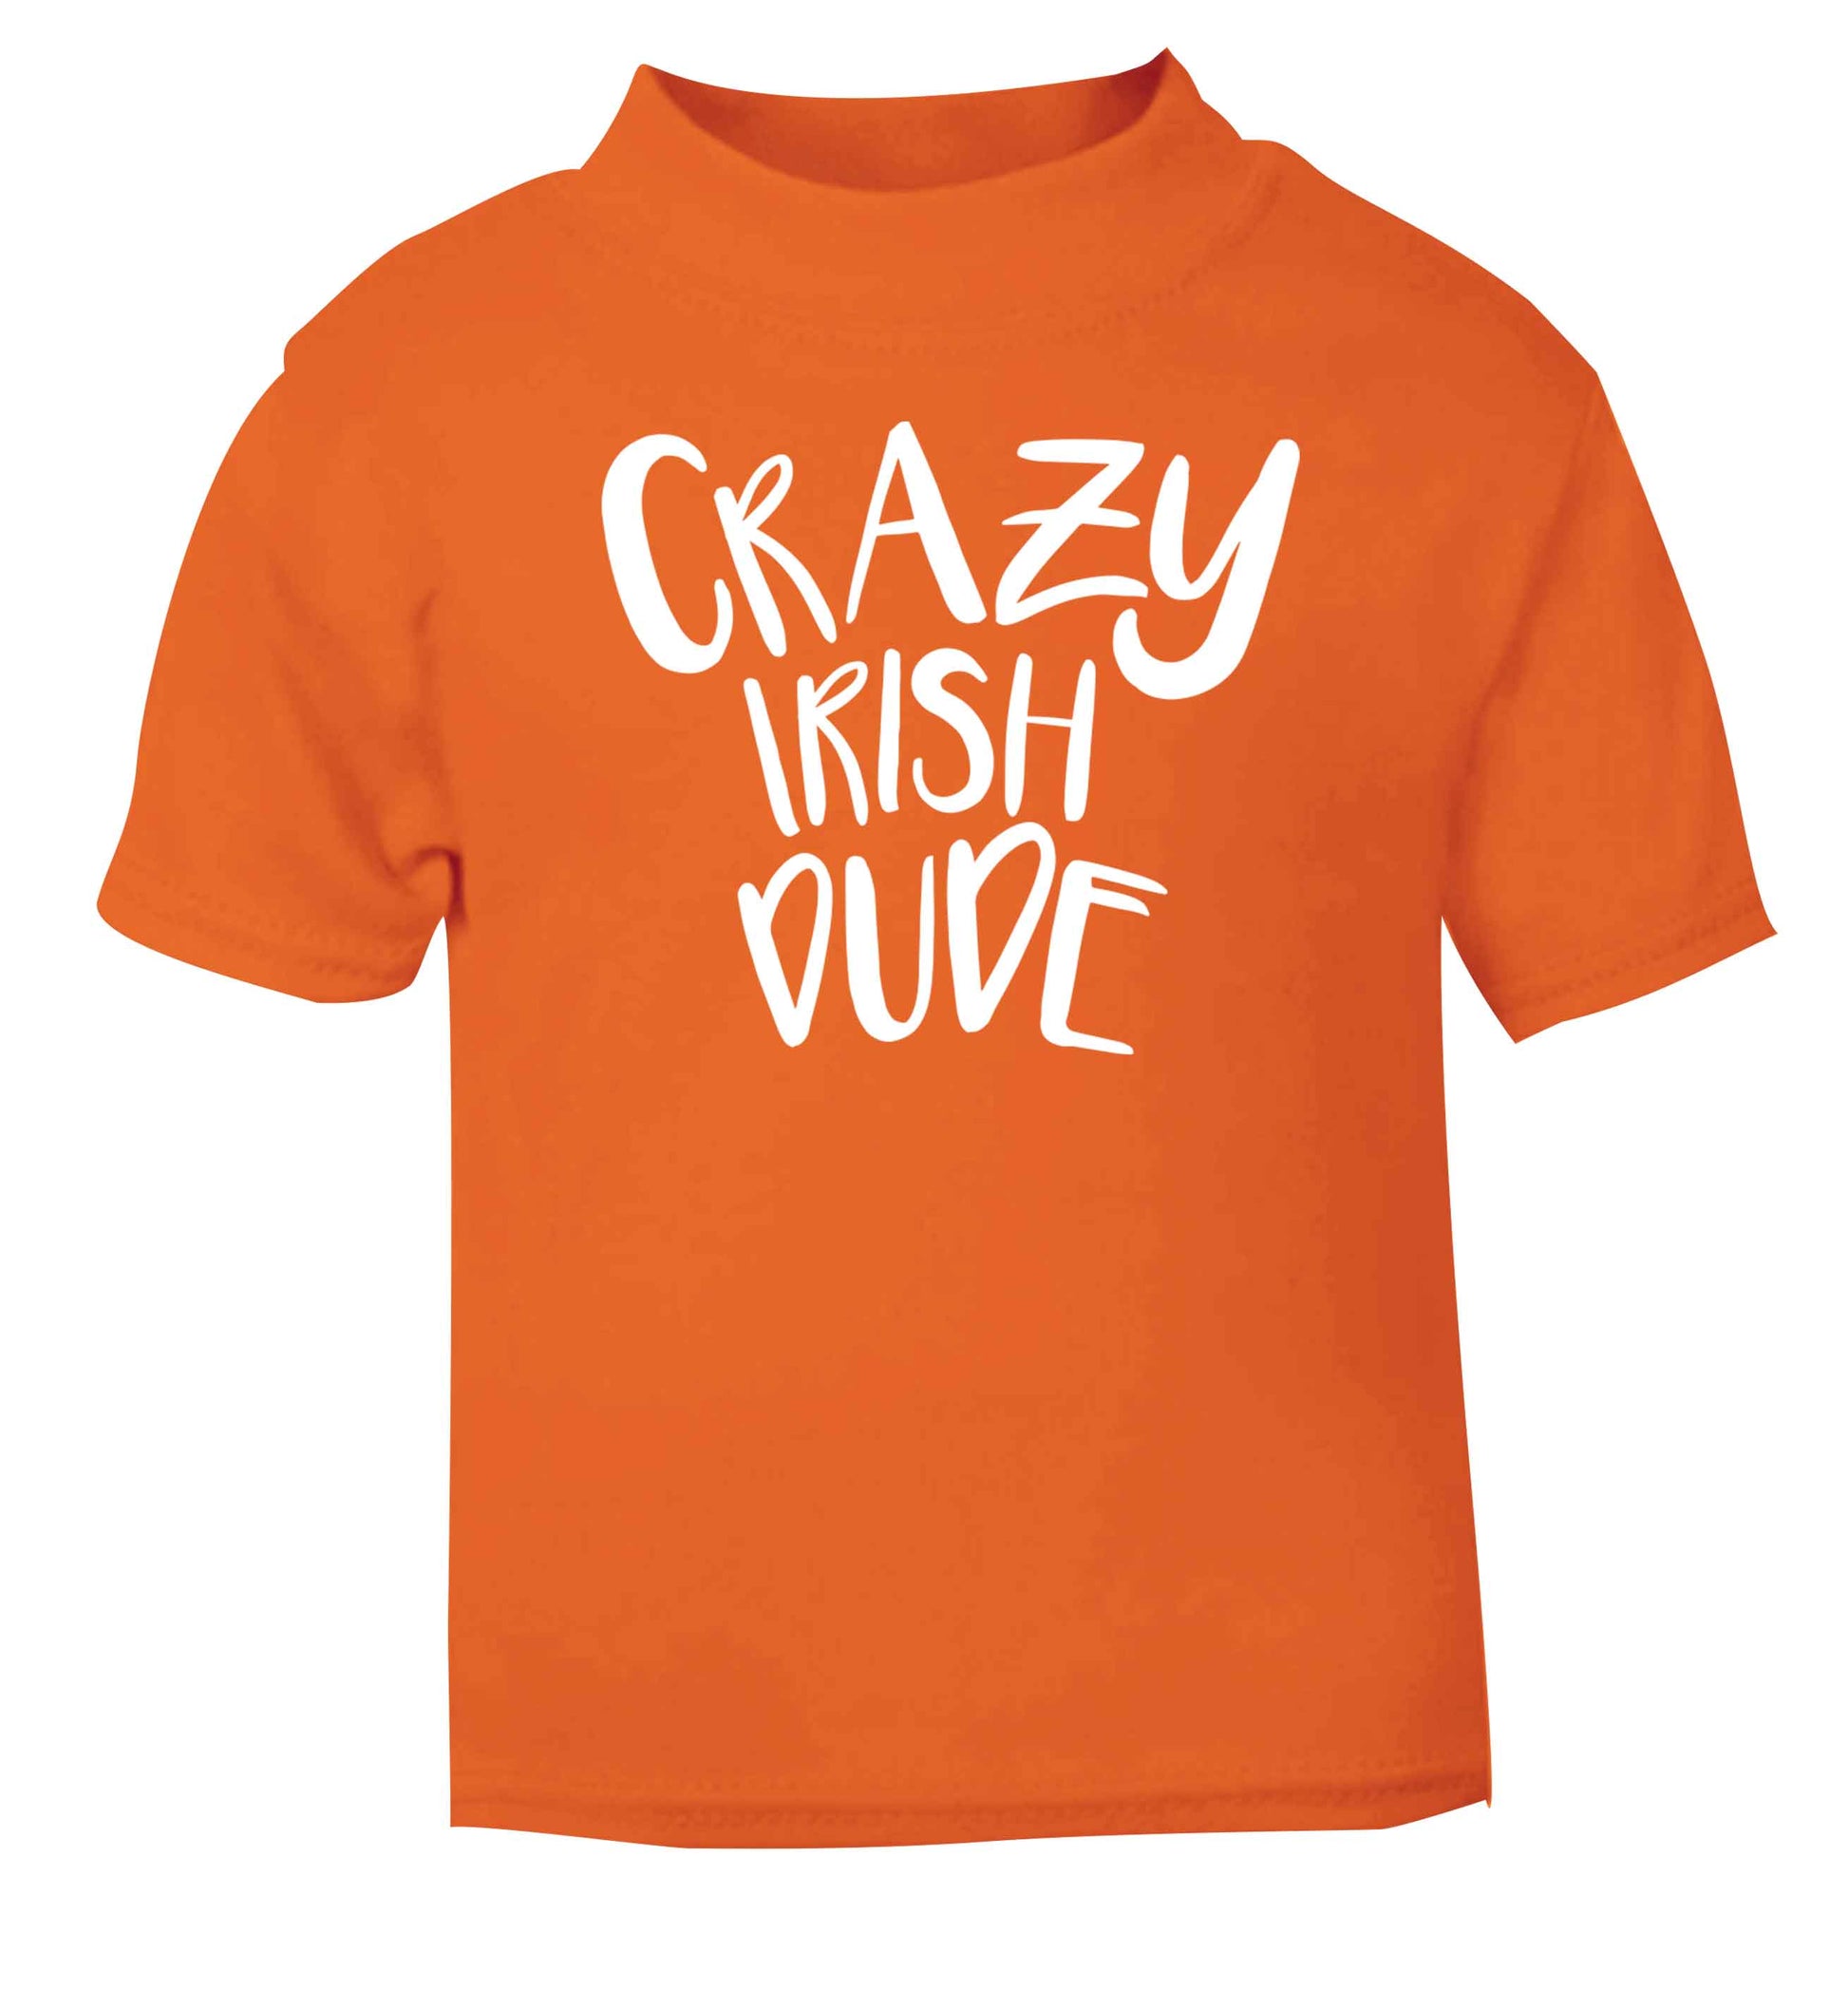 Crazy Irish dude orange baby toddler Tshirt 2 Years